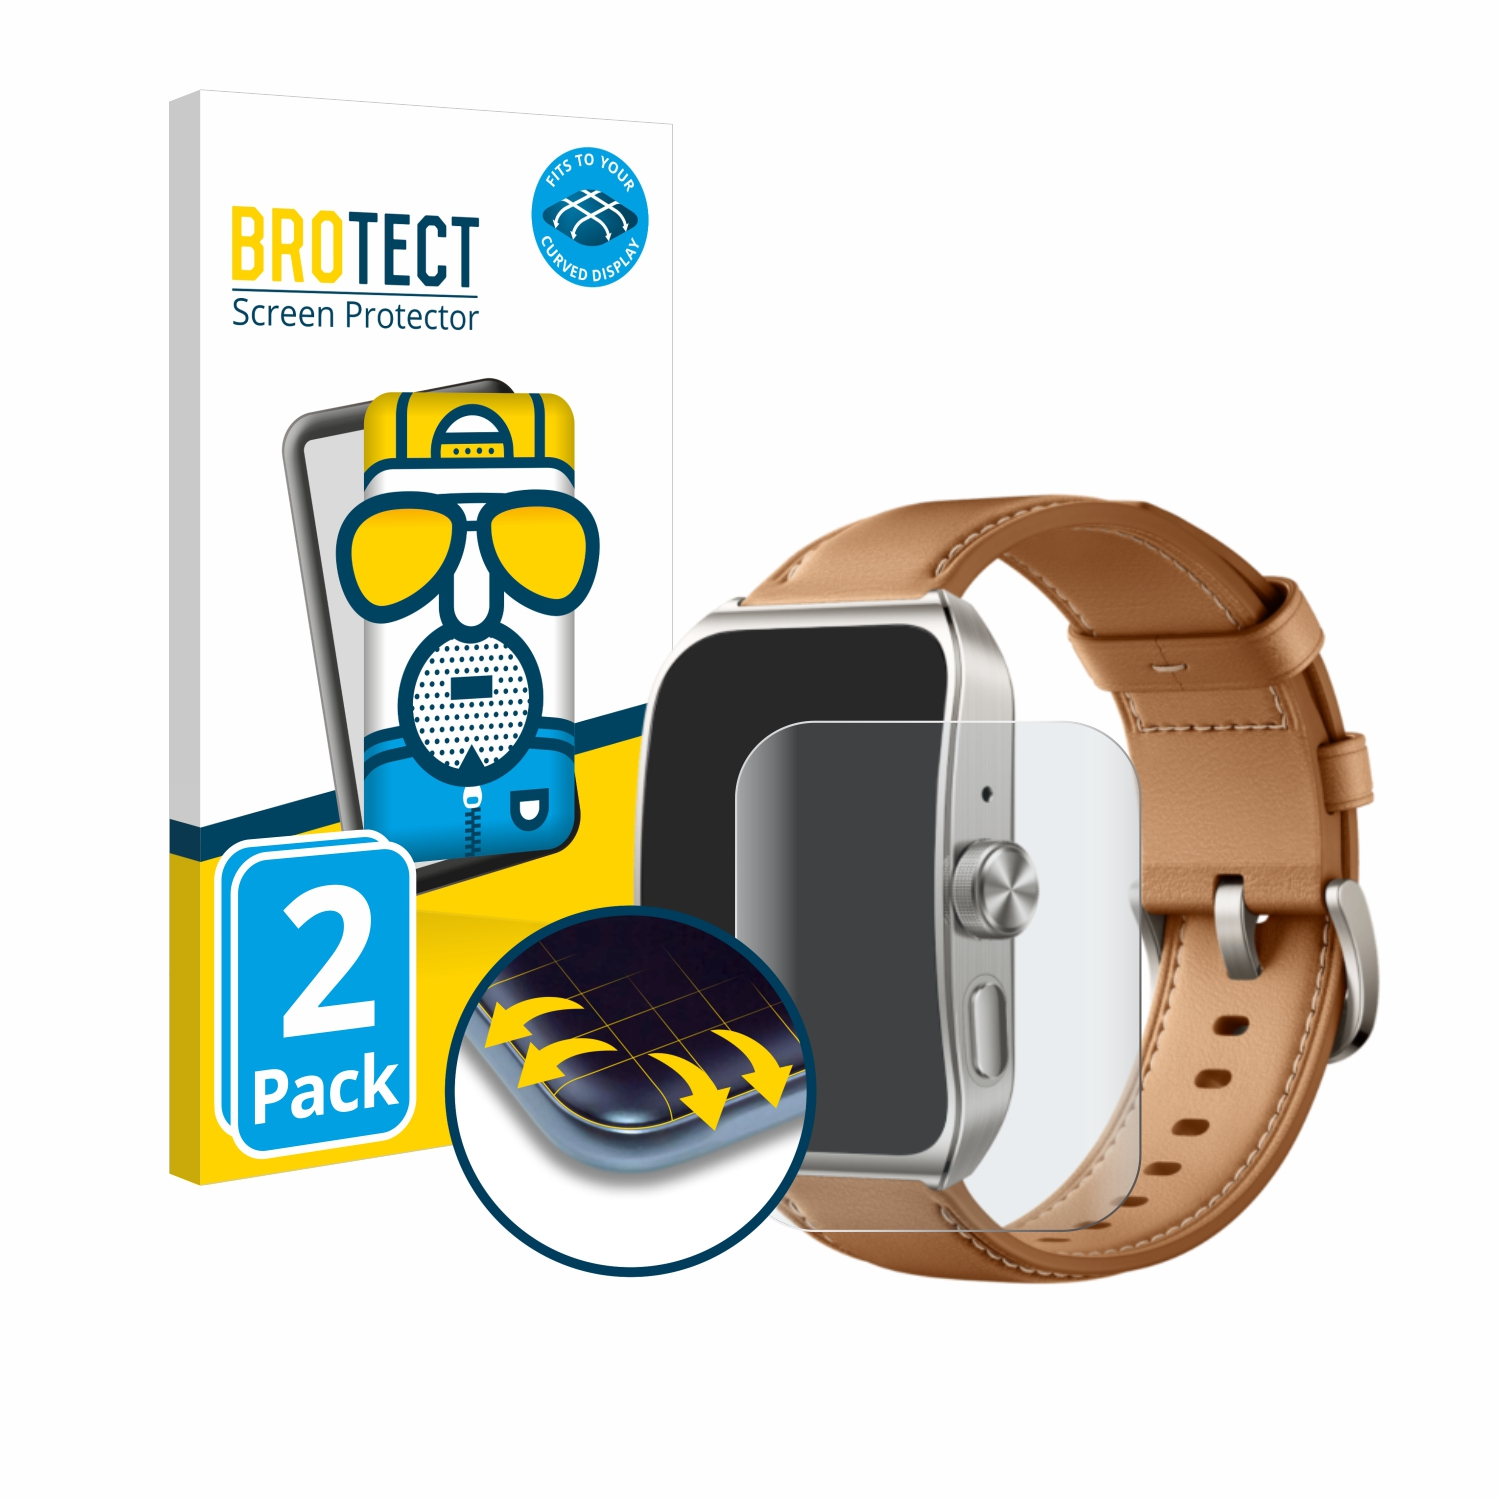 BROTECT 2x Flex matt Schutzfolie(für Curved Pro) Watch 4 Full-Cover Oppo 3D